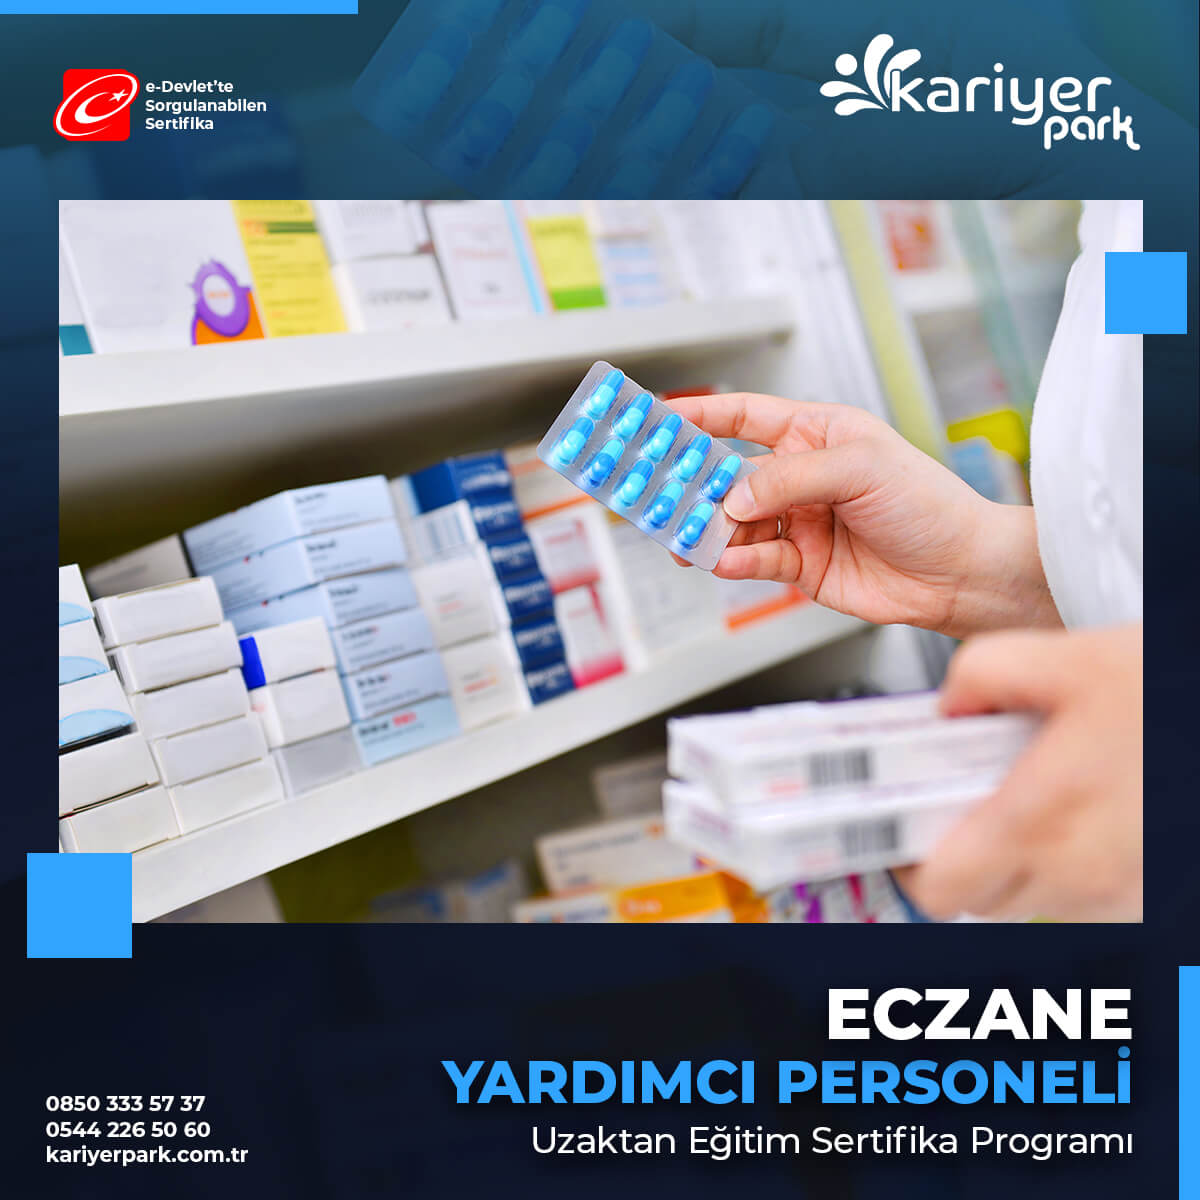 Eczane Yardımcı Personeli Sertifikası ile Türkiye'nin her yerinde bulunan eczanelere iş başvurusunda bulunabilirsiniz. Sertifikanız e-Devlet'te Sorgulanabilir.